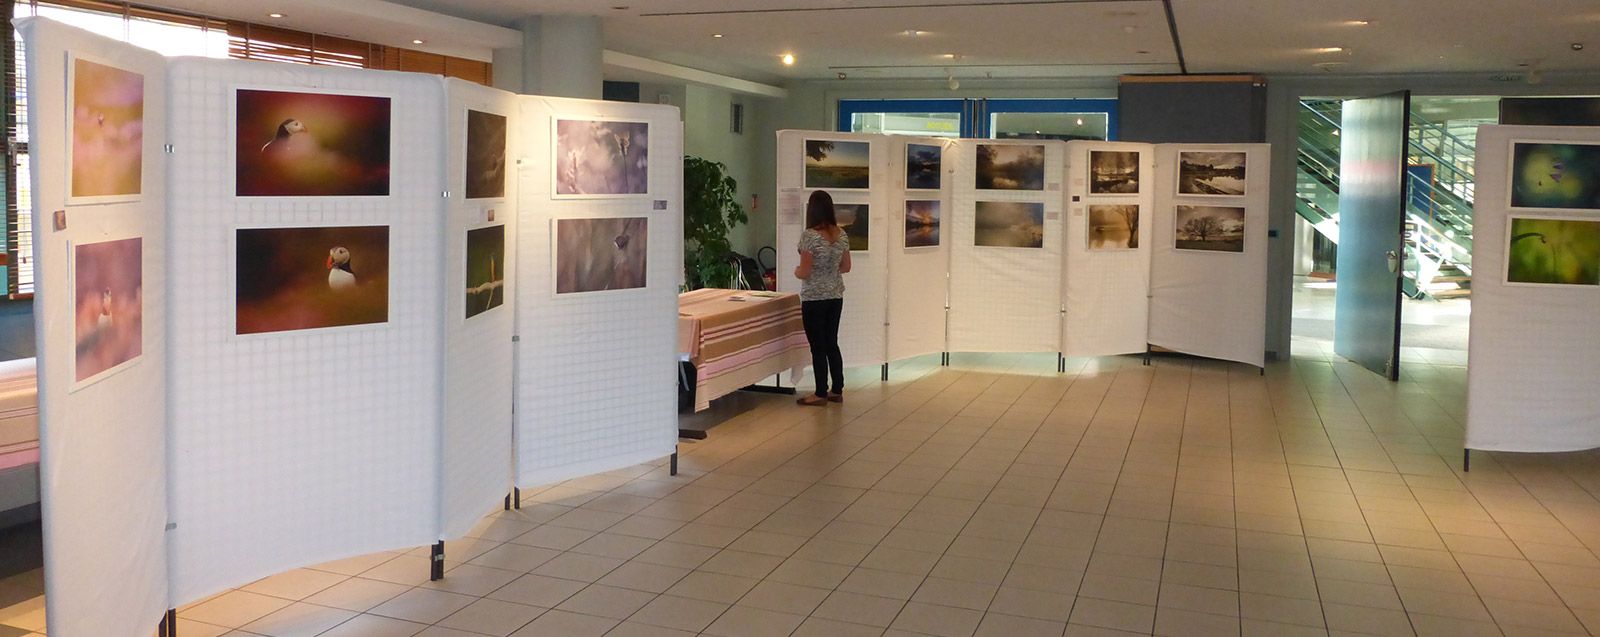 Exposition galerie Hôtel de Ville Villefontaine